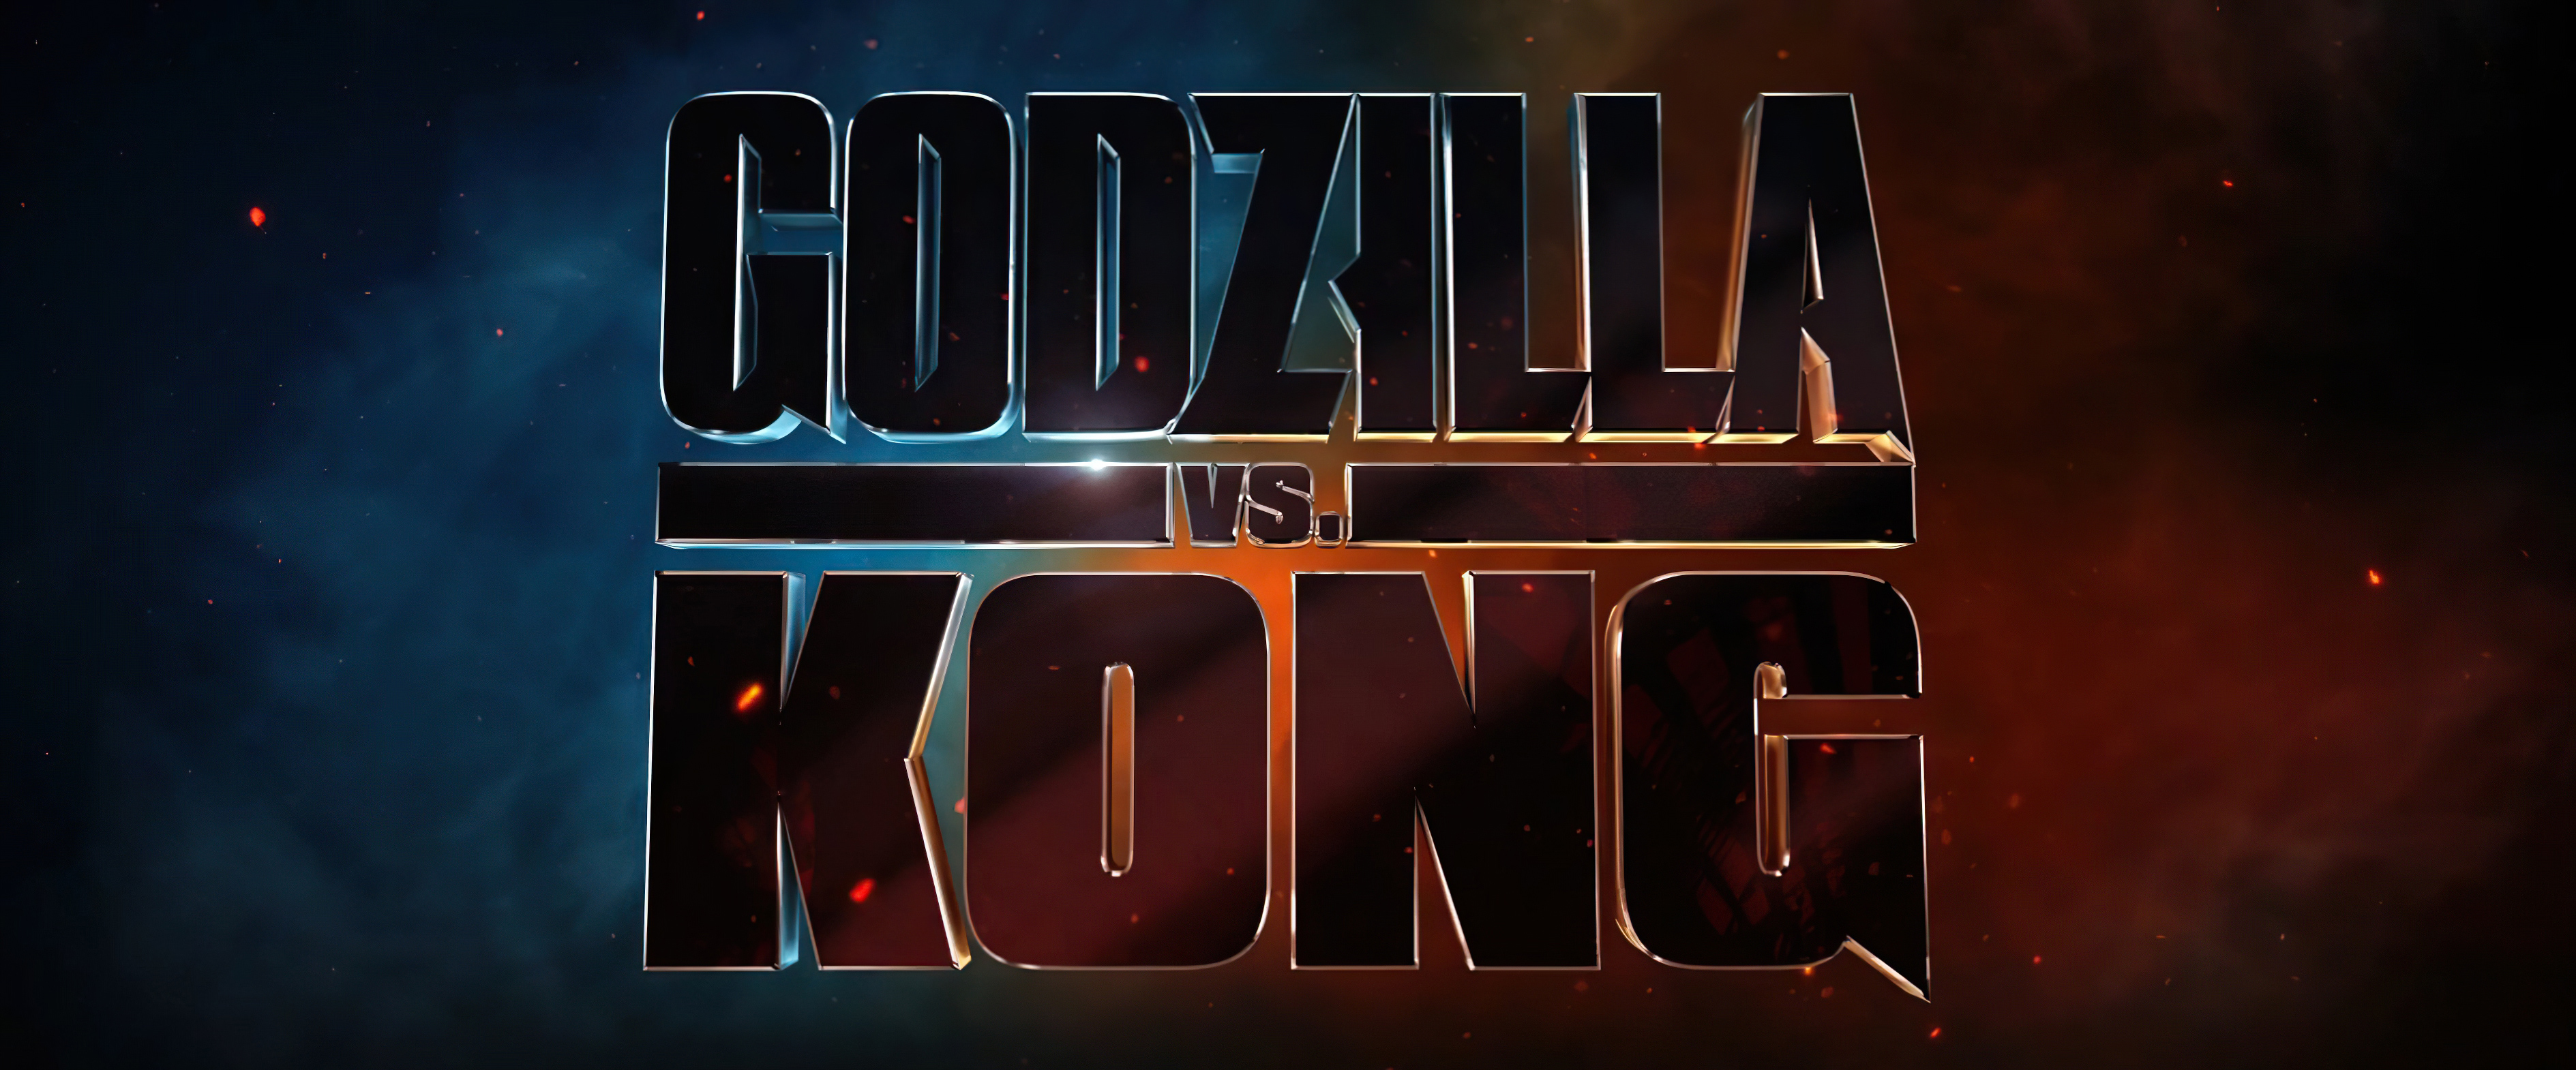 桌面上的壁纸2021 年电影 GOLZILLA VS KONG 徽标